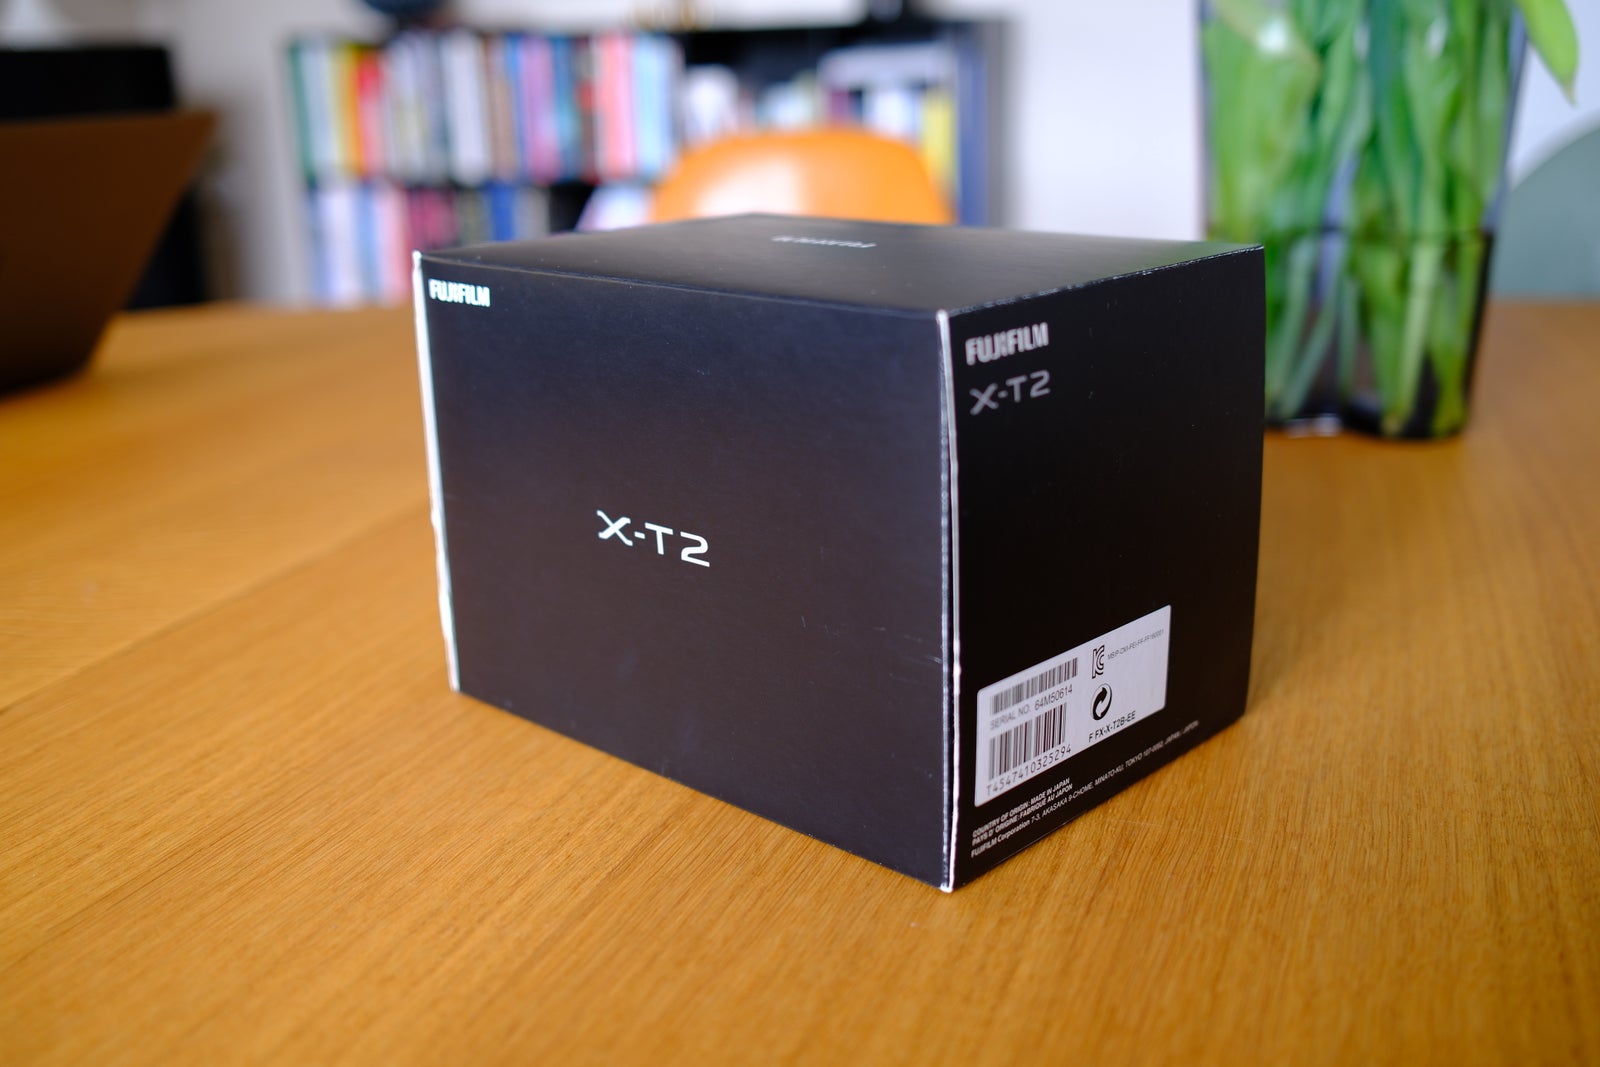 Fujifilm, X-T2, 24 megapixels